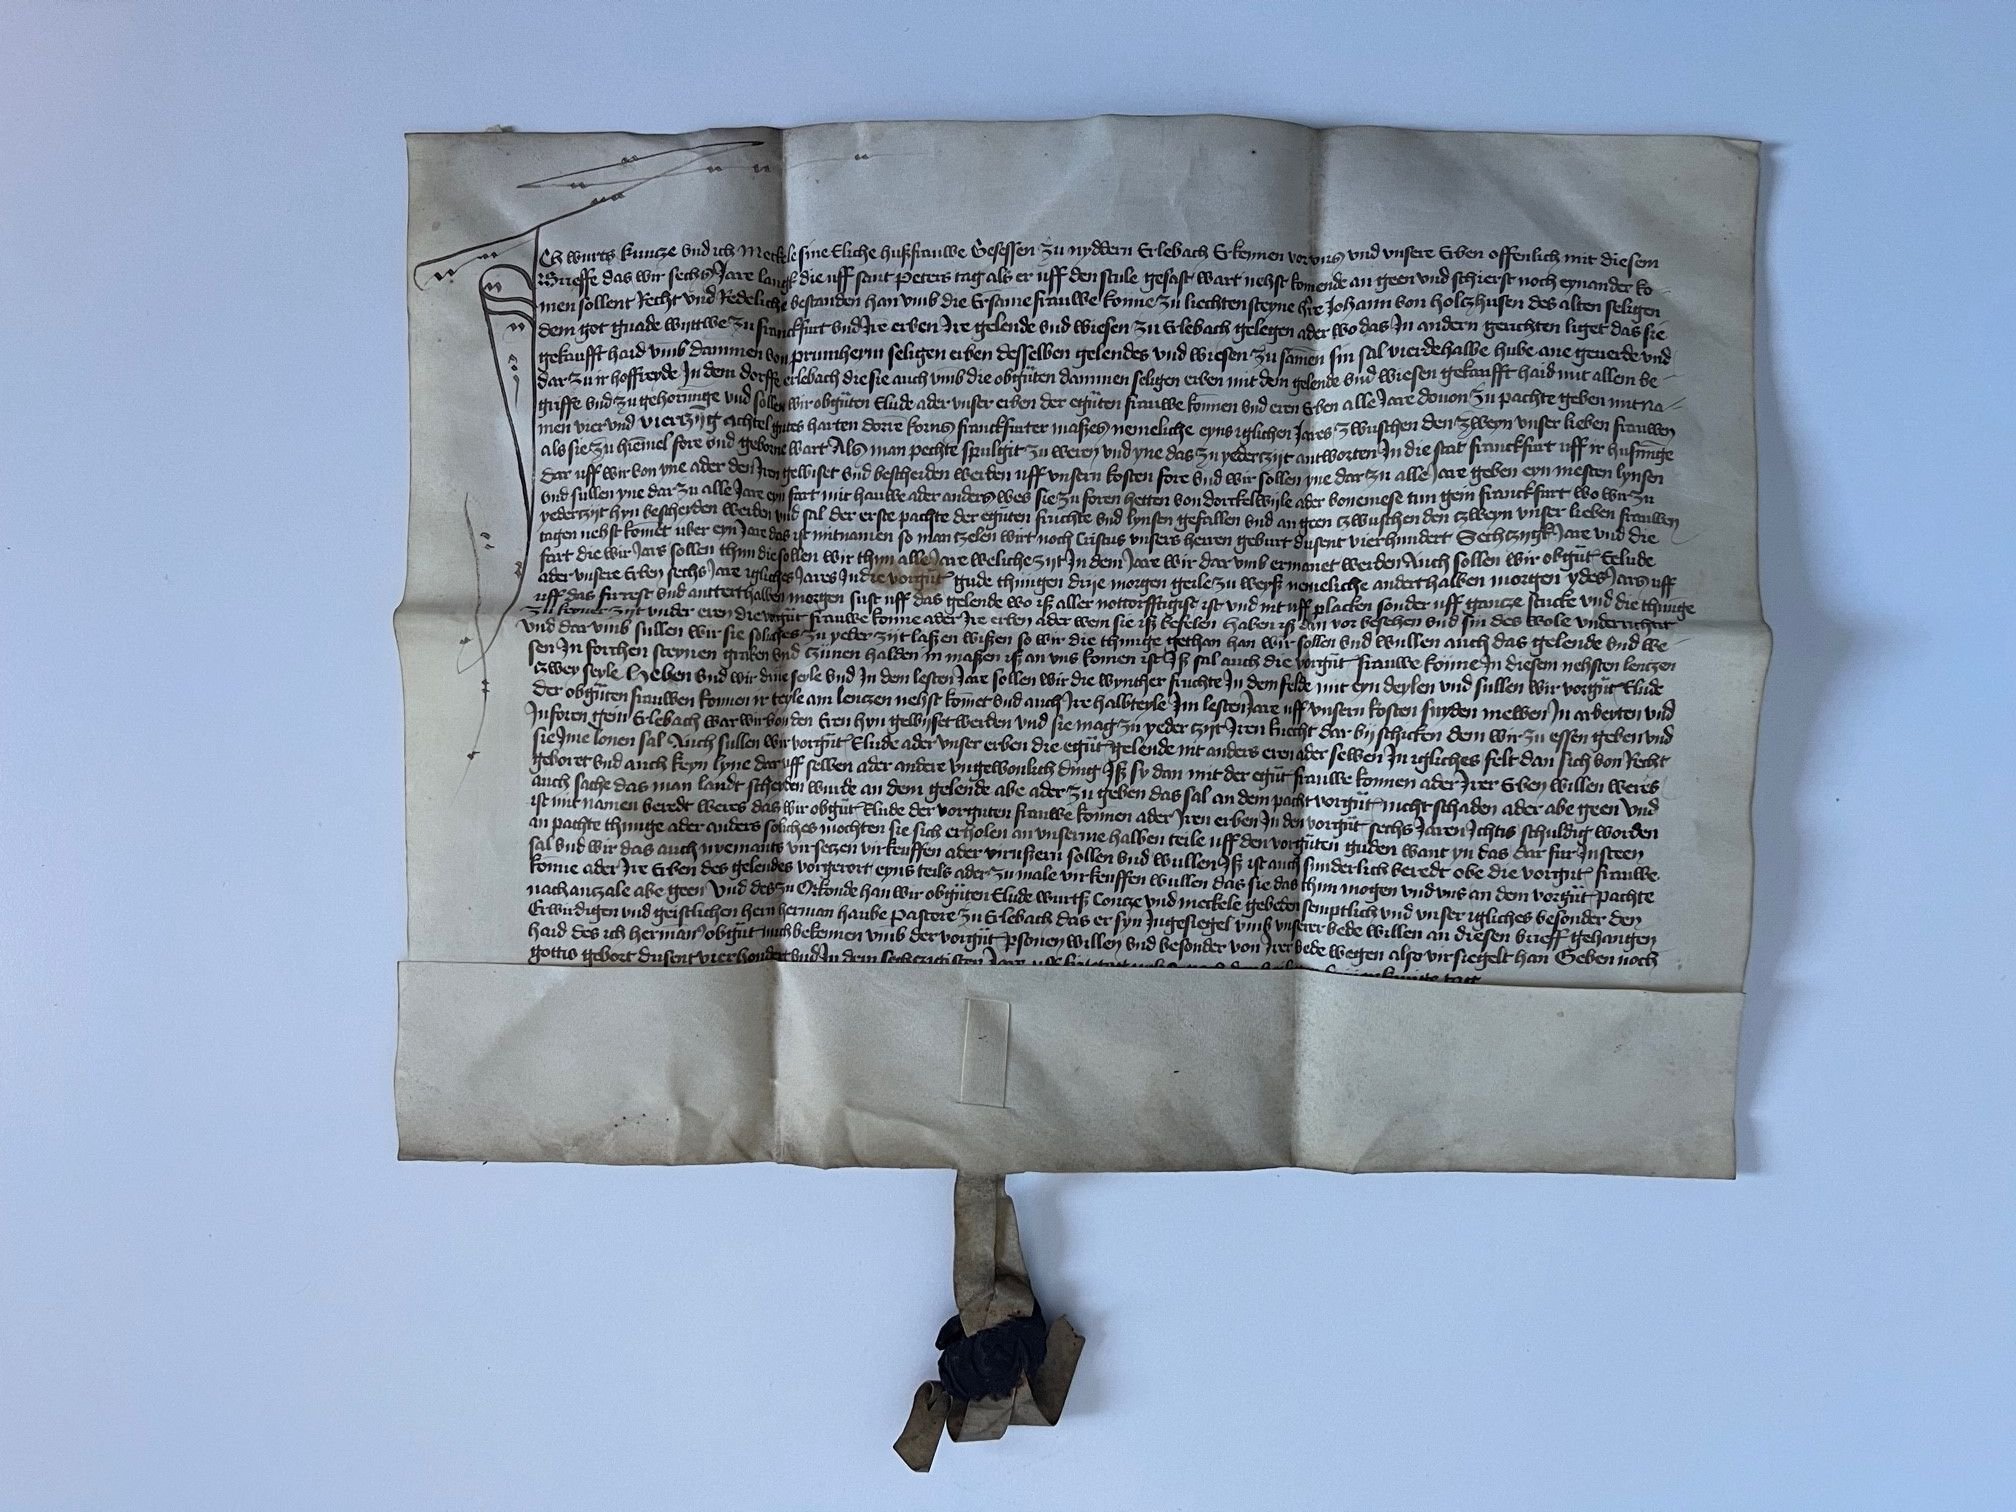 Urkunde, Kauf von Höfen mit 3,5 Huben Land in Nieder-Erlenbach durch Johann von Holzhausen, 1460 (Taunus-Rhein-Main - Regionalgeschichtliche Sammlung Dr. Stefan Naas CC BY-NC-SA)